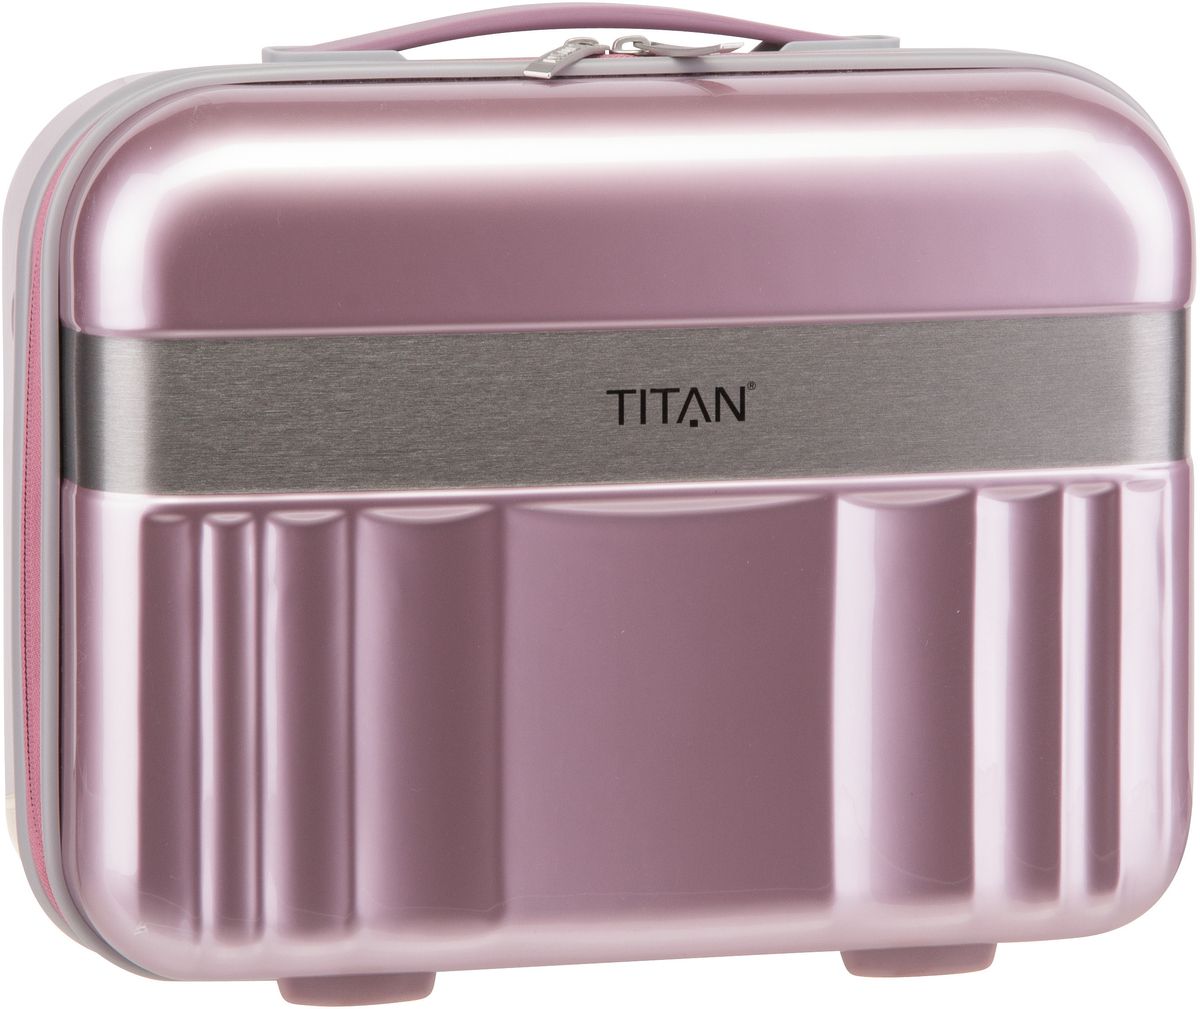 Titan Spotlight Flash Beautycase - Wild Rose